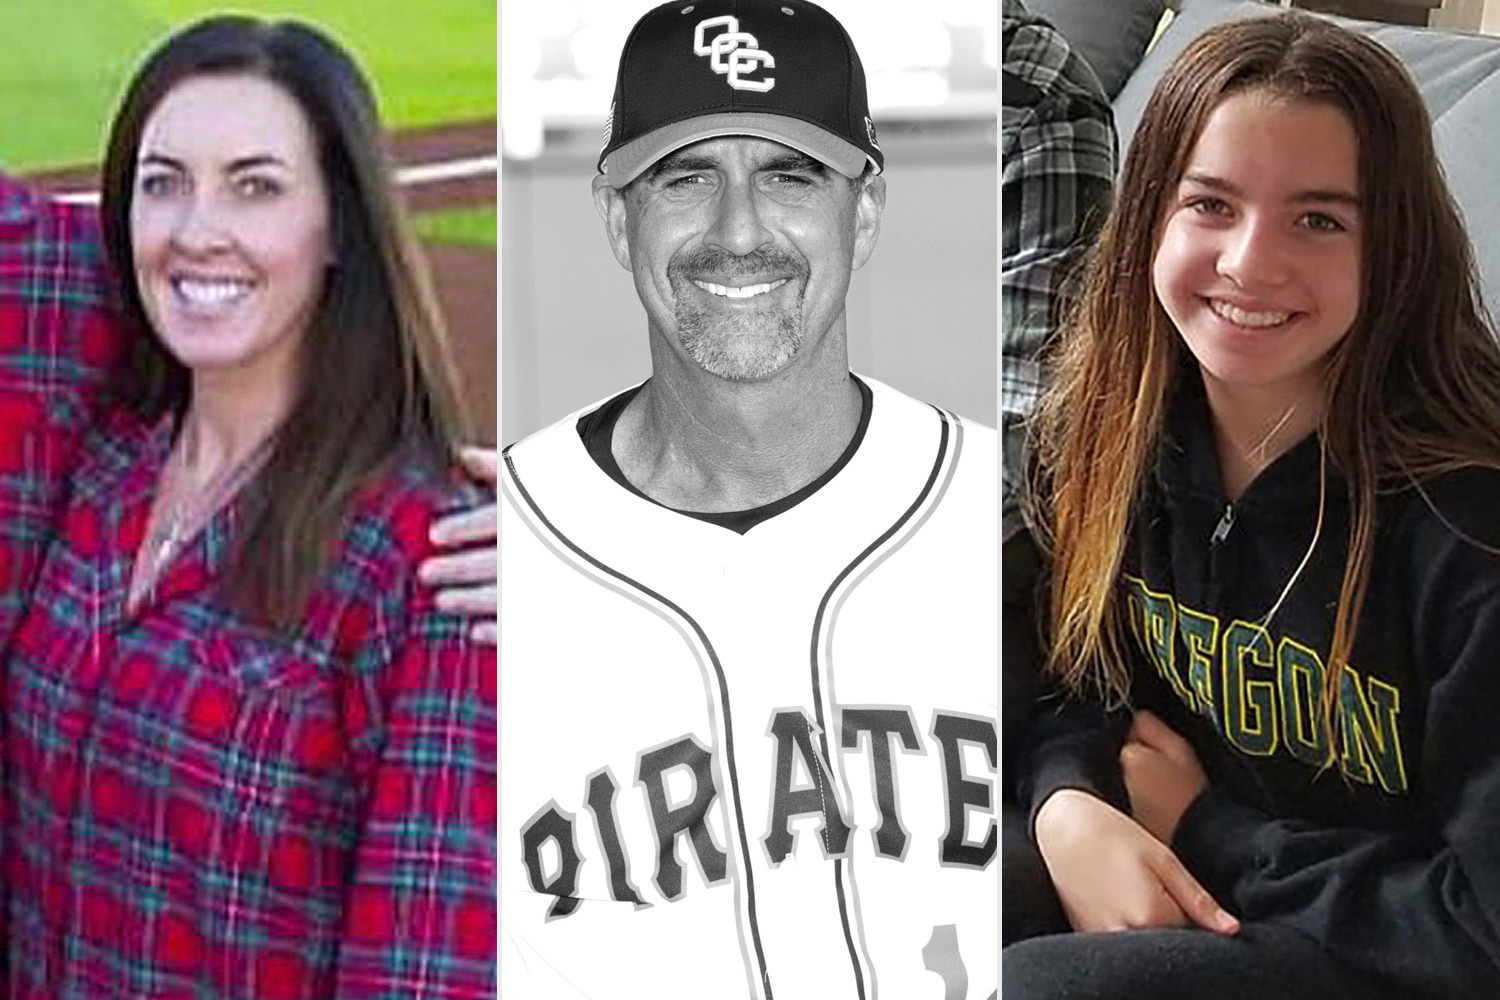 Thực hiện ước nguyện cuối cùng của Kobe Bryant, người đại diện giải bóng chày viết tiếp giấc mơ của cô con gái bị mất hết gia đình trong tai nạn trực thăng - Ảnh 1.